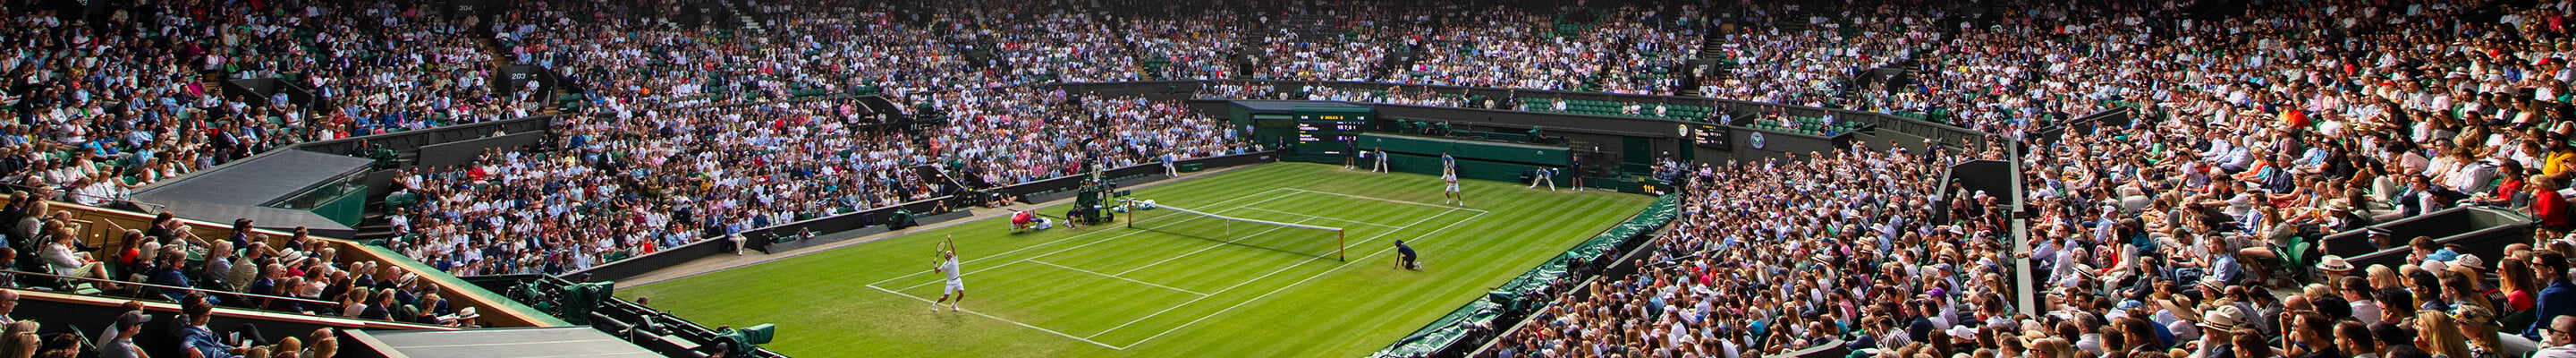 Tennis player serving at Wimbledon tournament banner